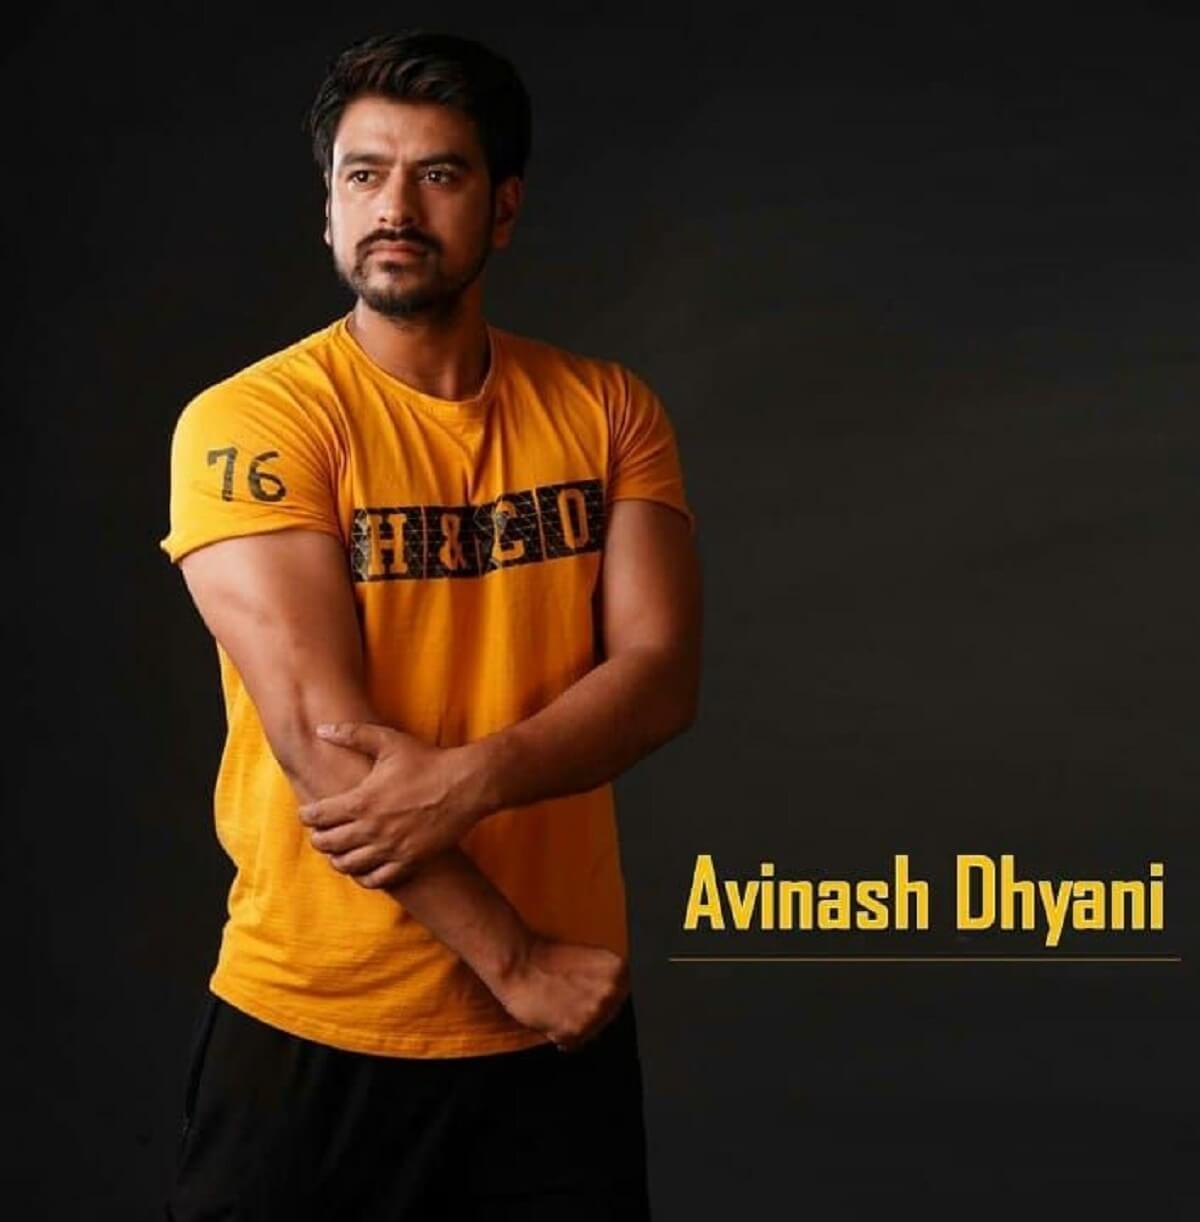 Avinash Dhyani